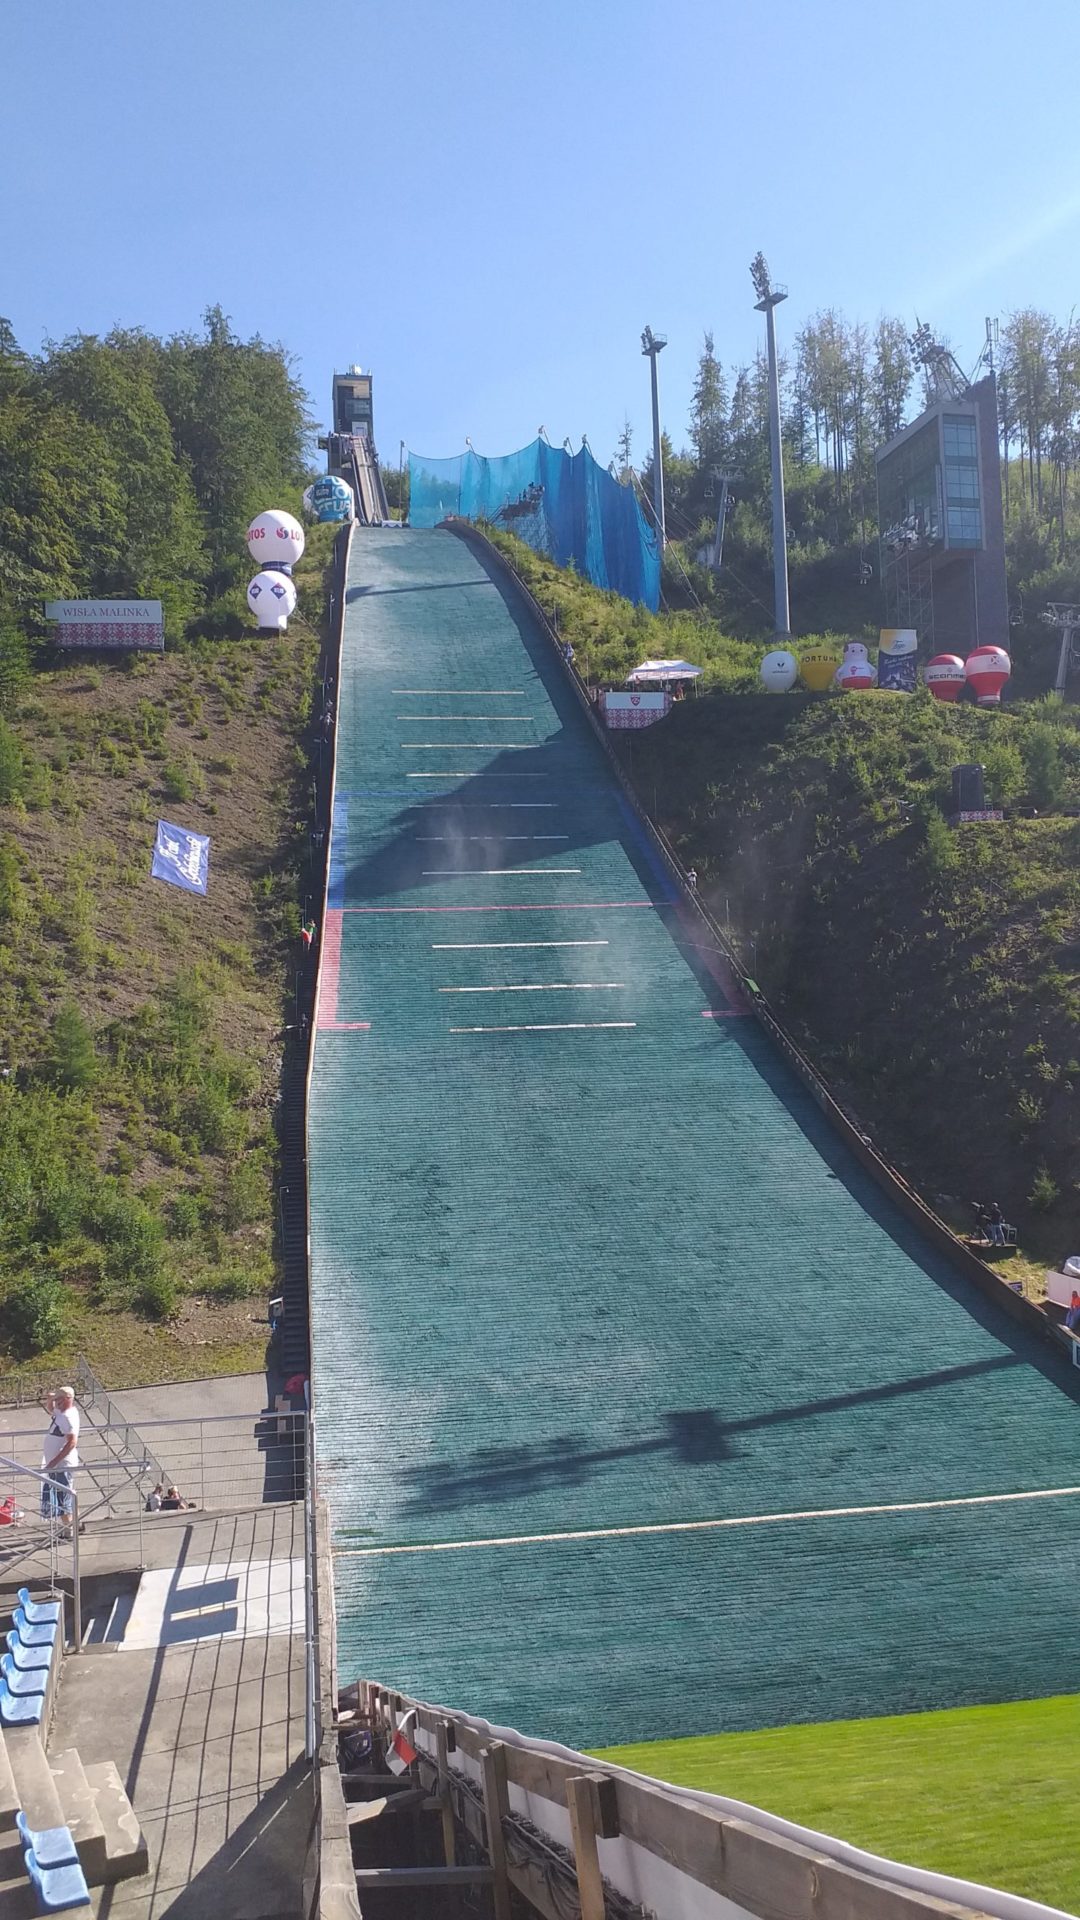 Puchar Świata w skokach narciarskich 2020/21 już w sobotę w Wiśle!